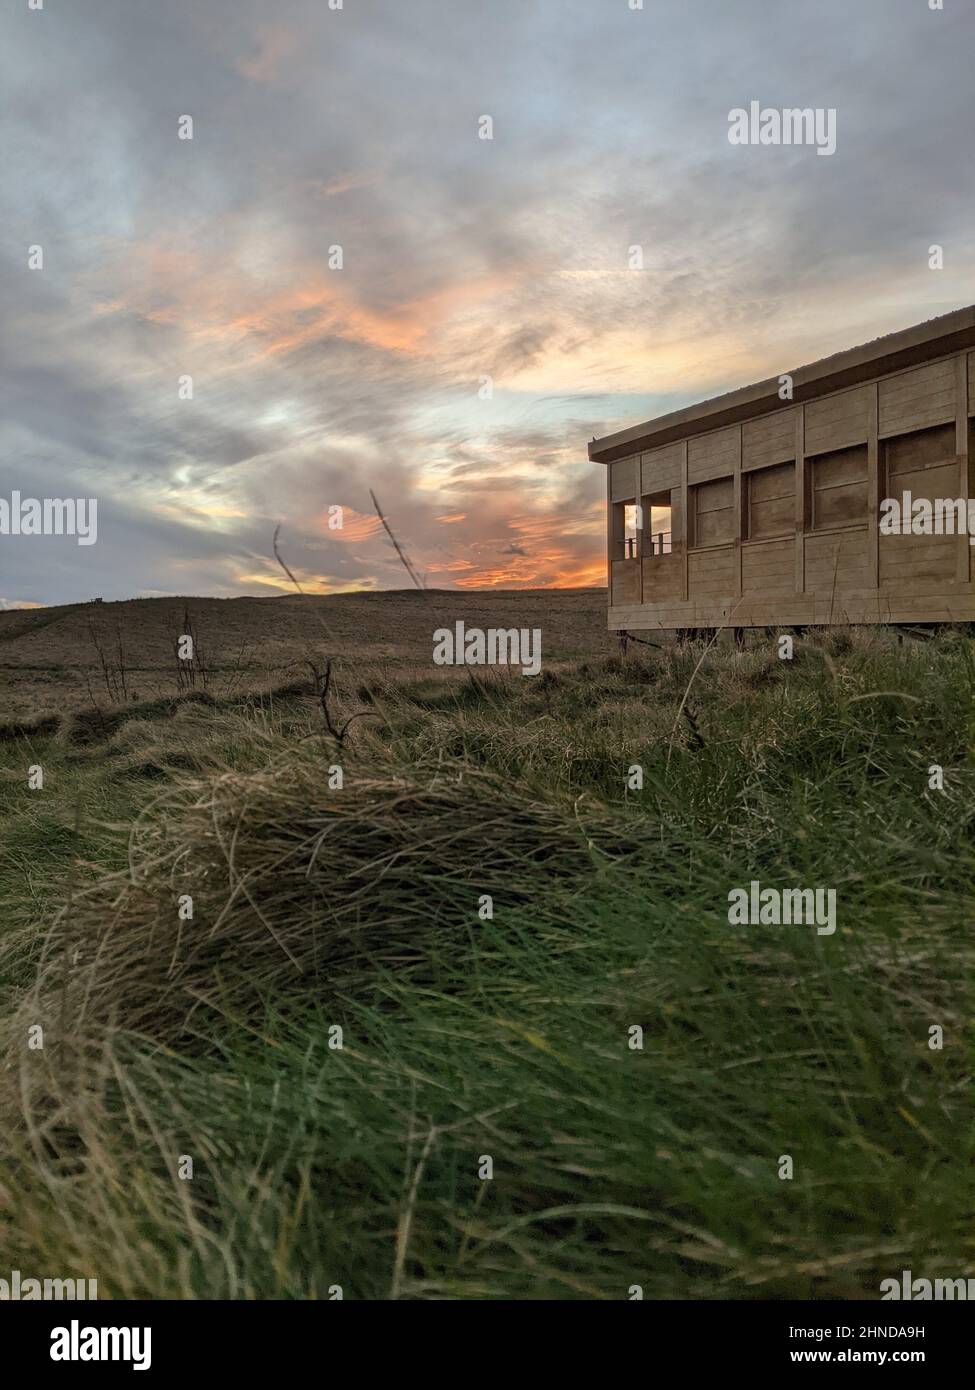 Vogelhaus Holzhütte zwischen langem Gras und Sonnenuntergang Himmel Stockfoto